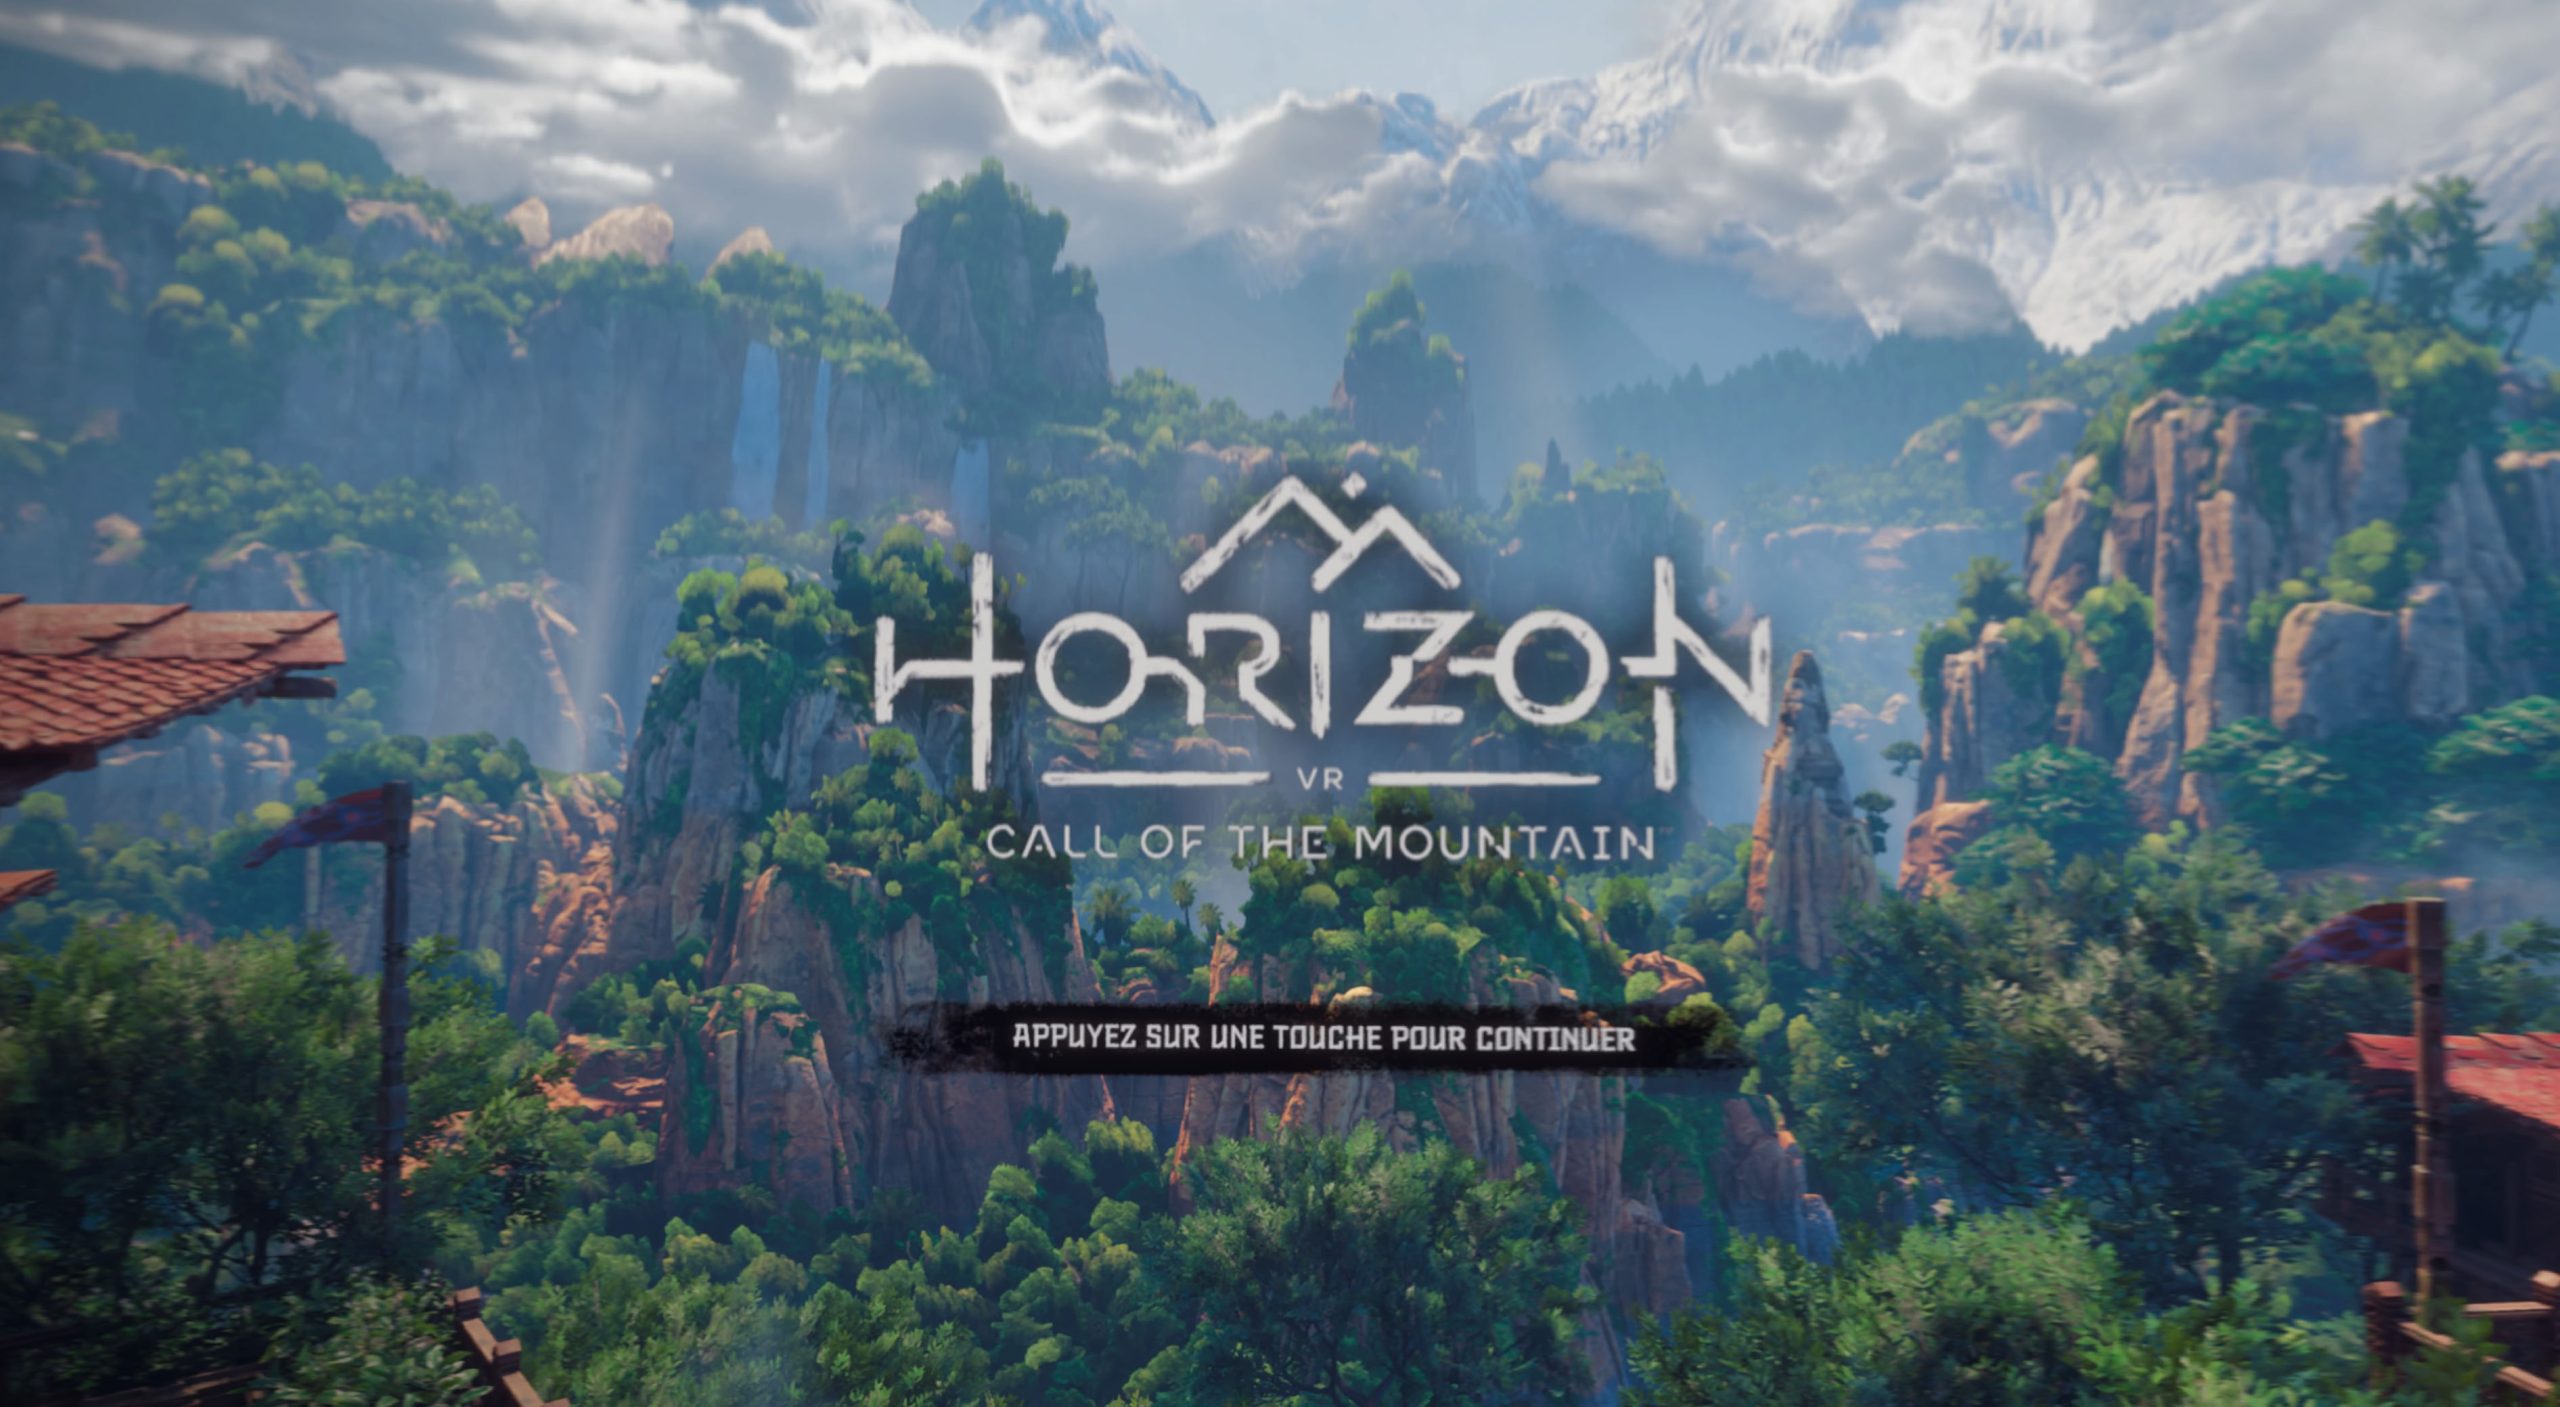 Menu d'accueil de "Horizon call of the Mountain".